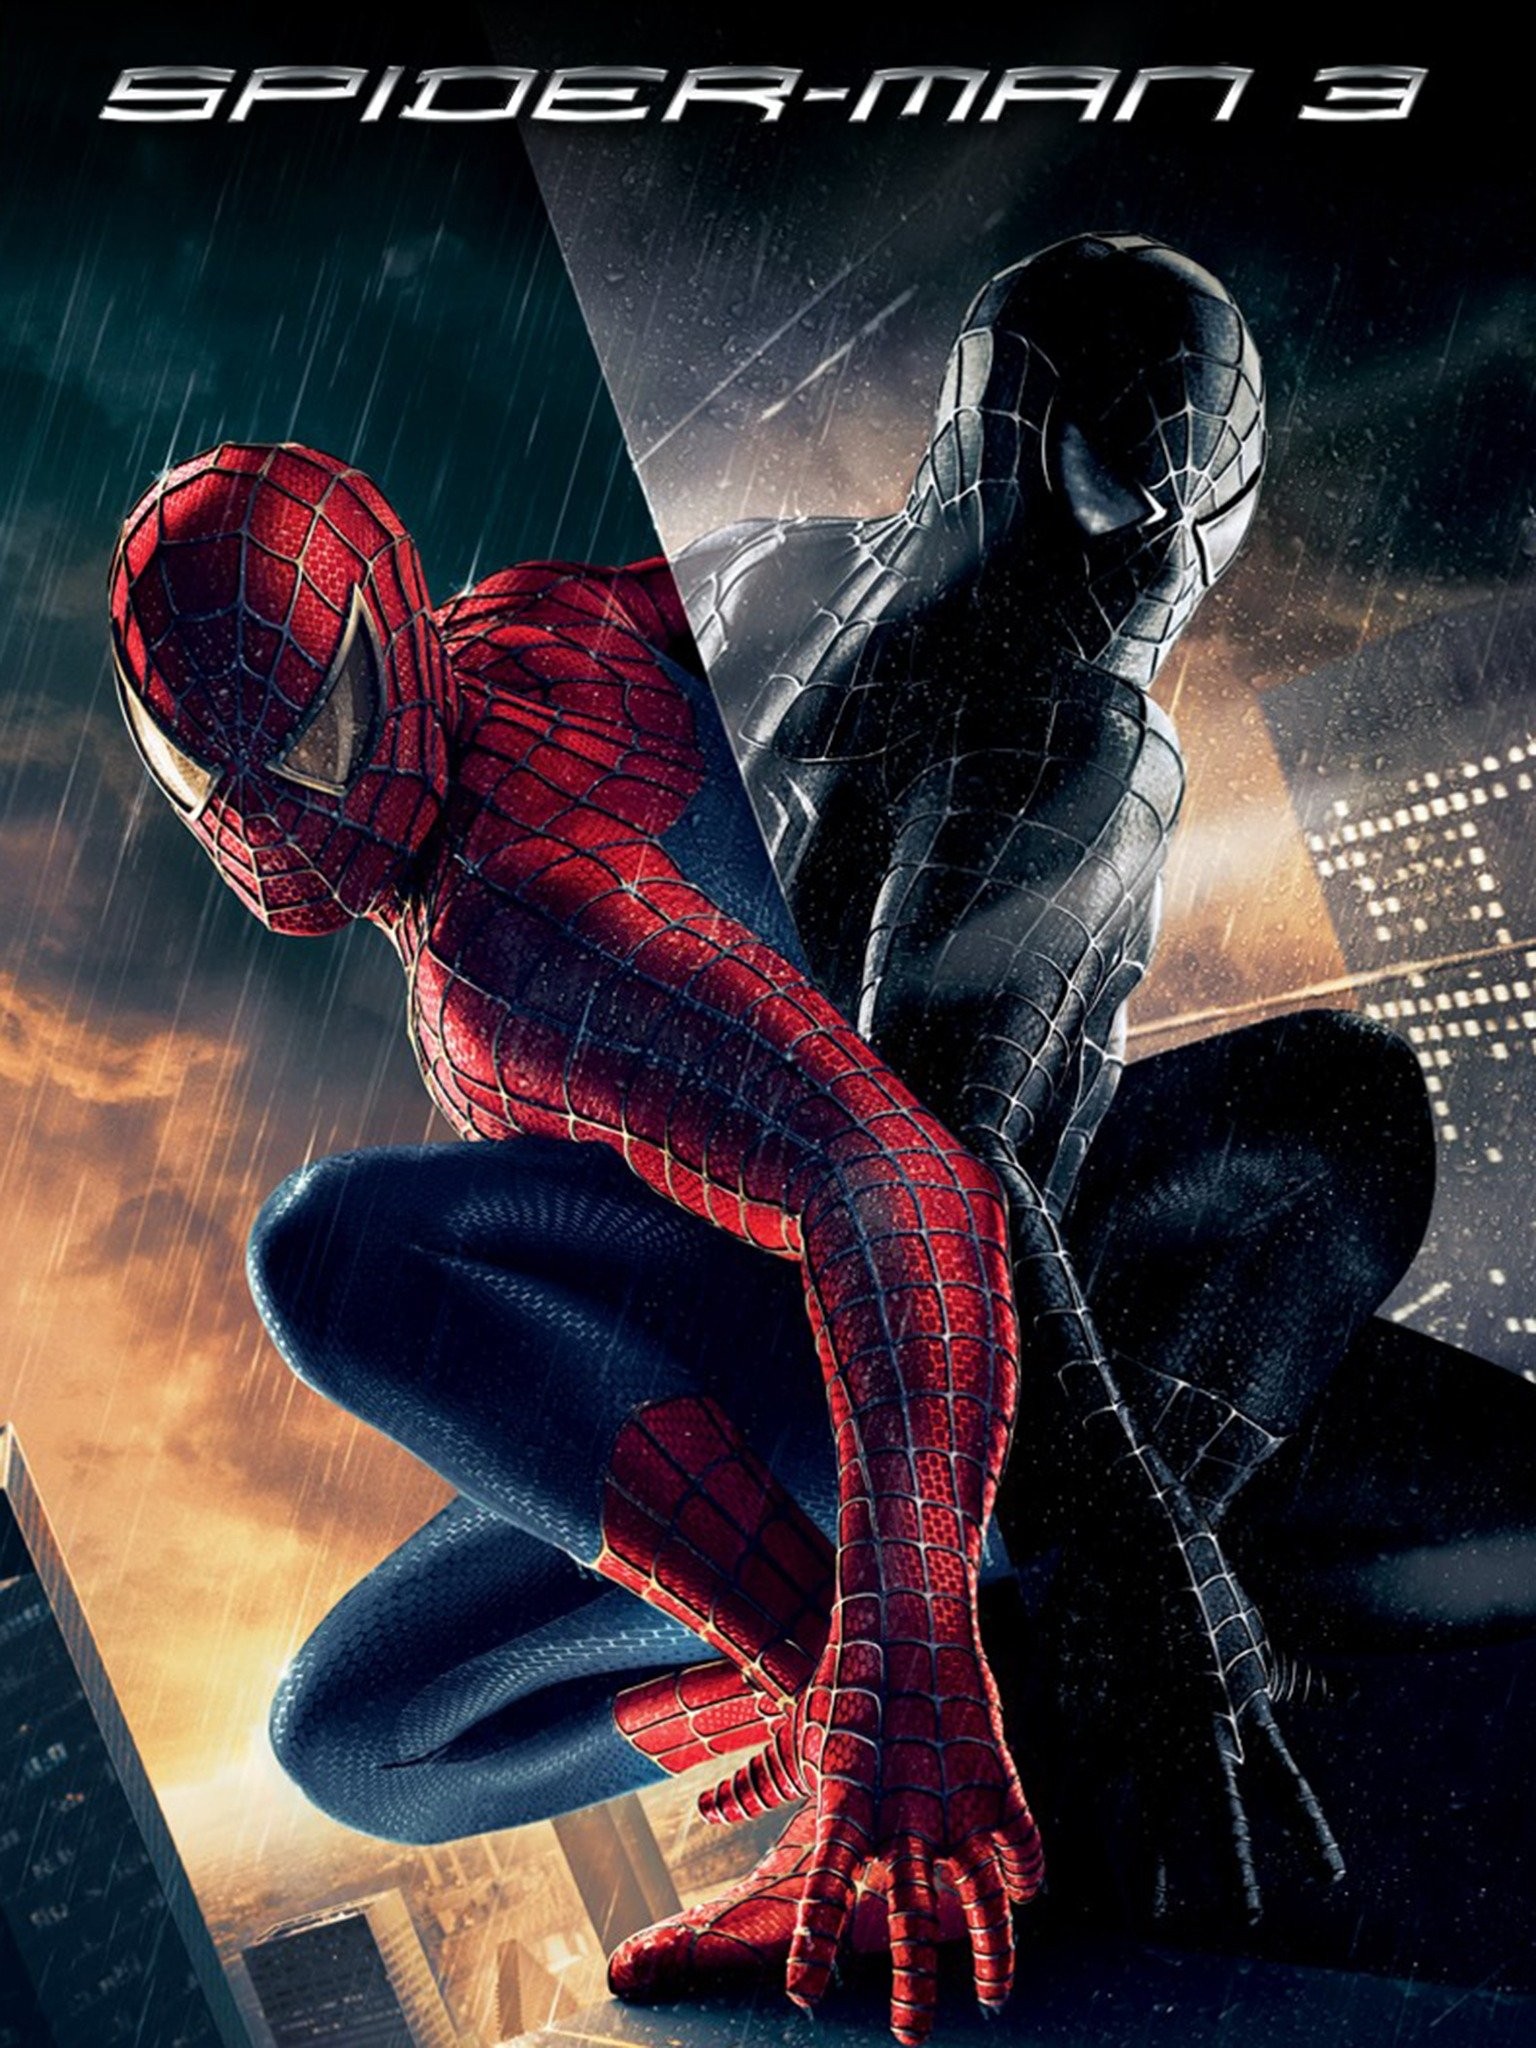 Spider-man 3 free online movie